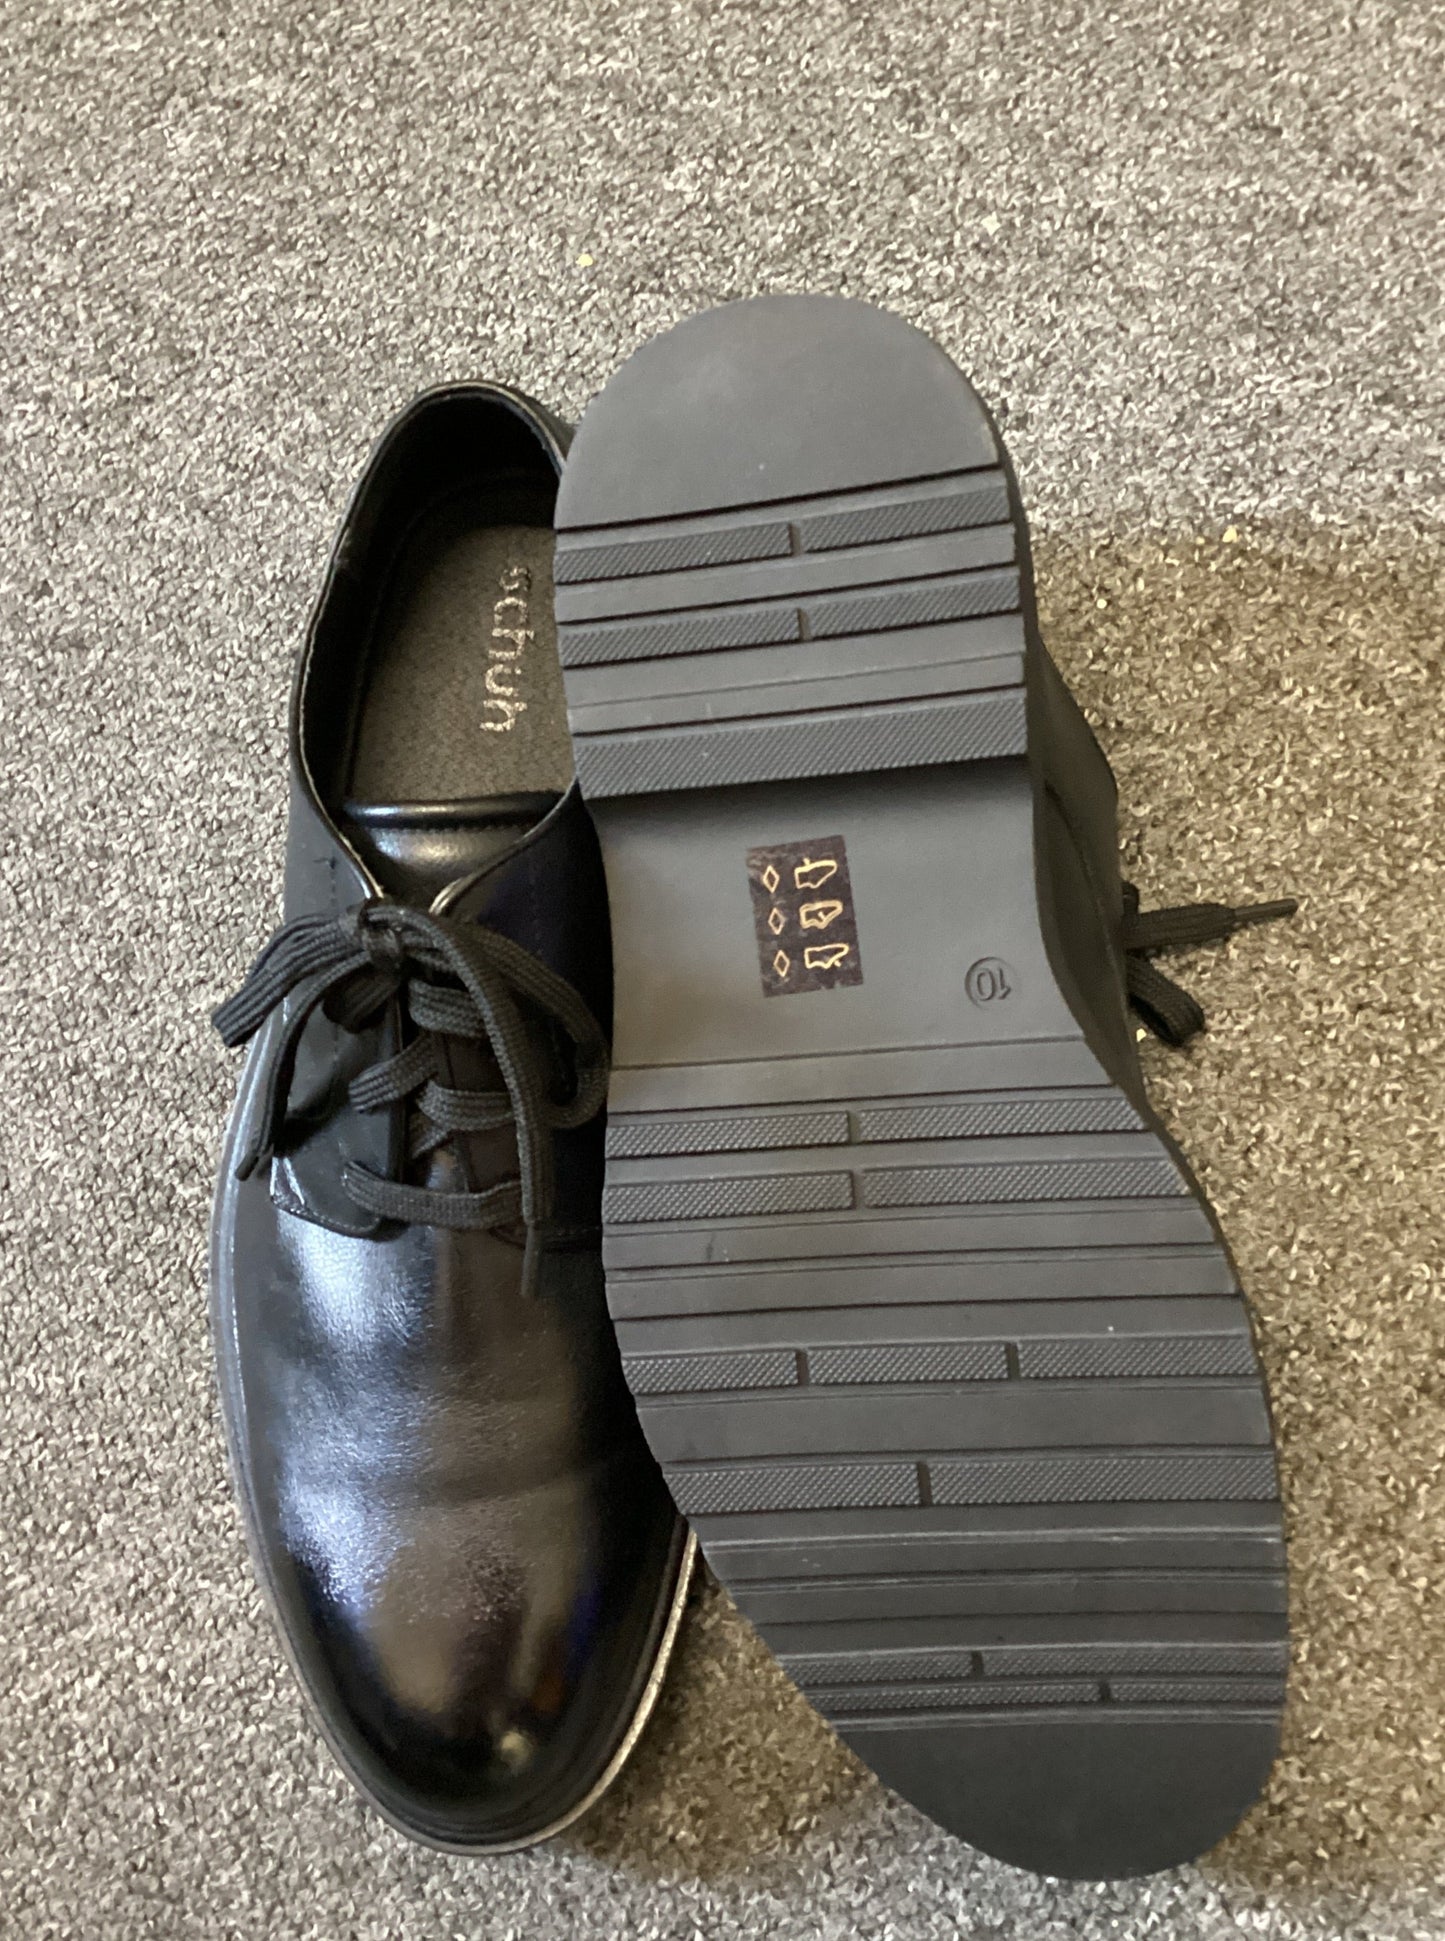 Schuh Black Dress Shoes size 9